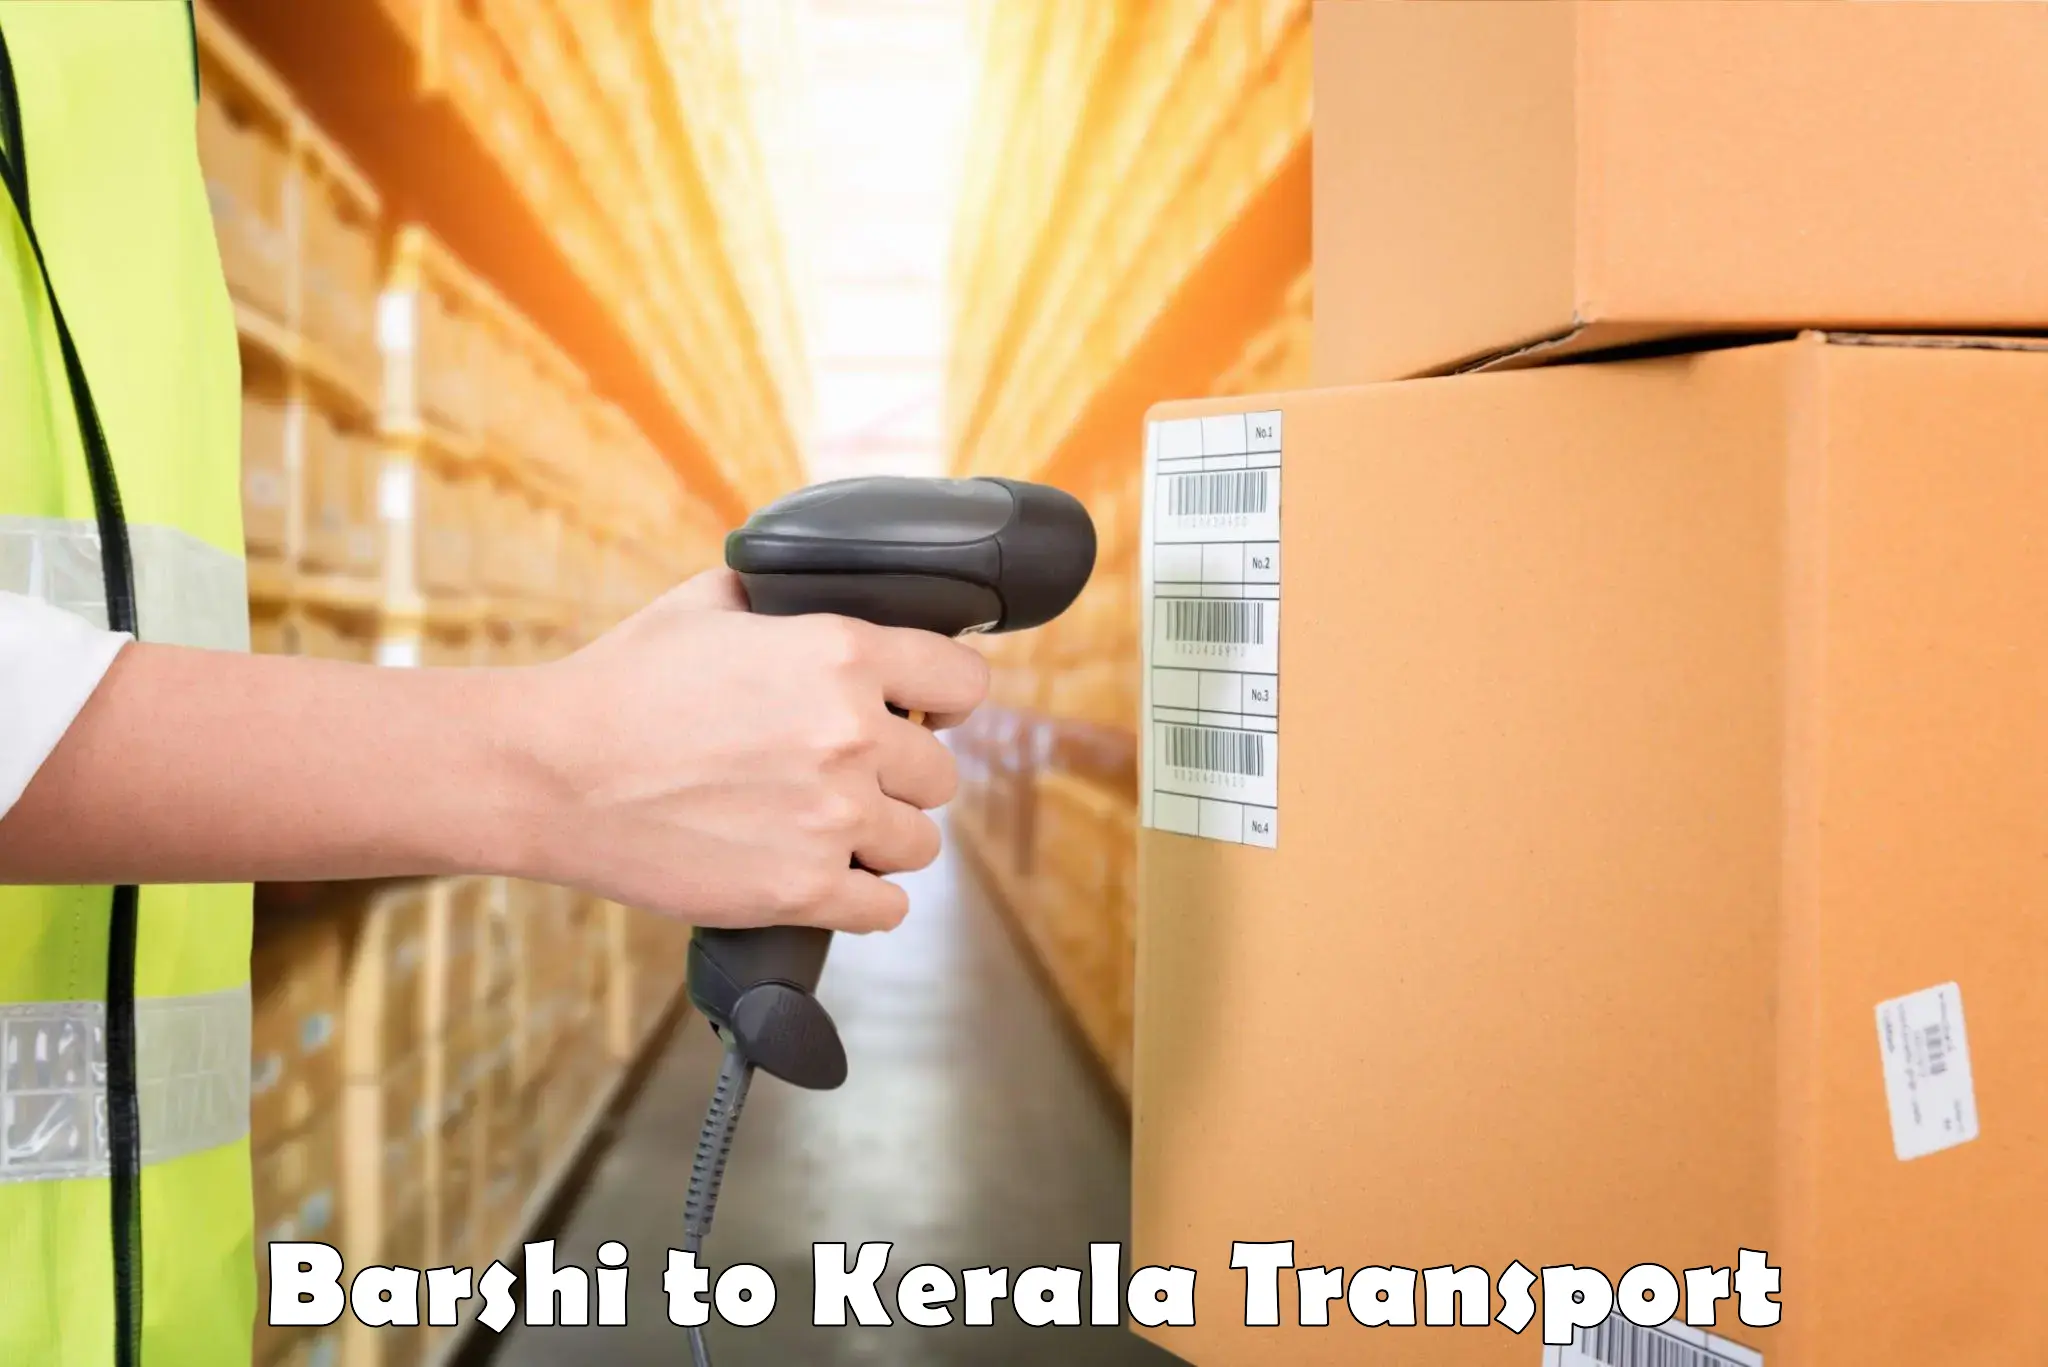 All India transport service Barshi to Kalluvathukkal